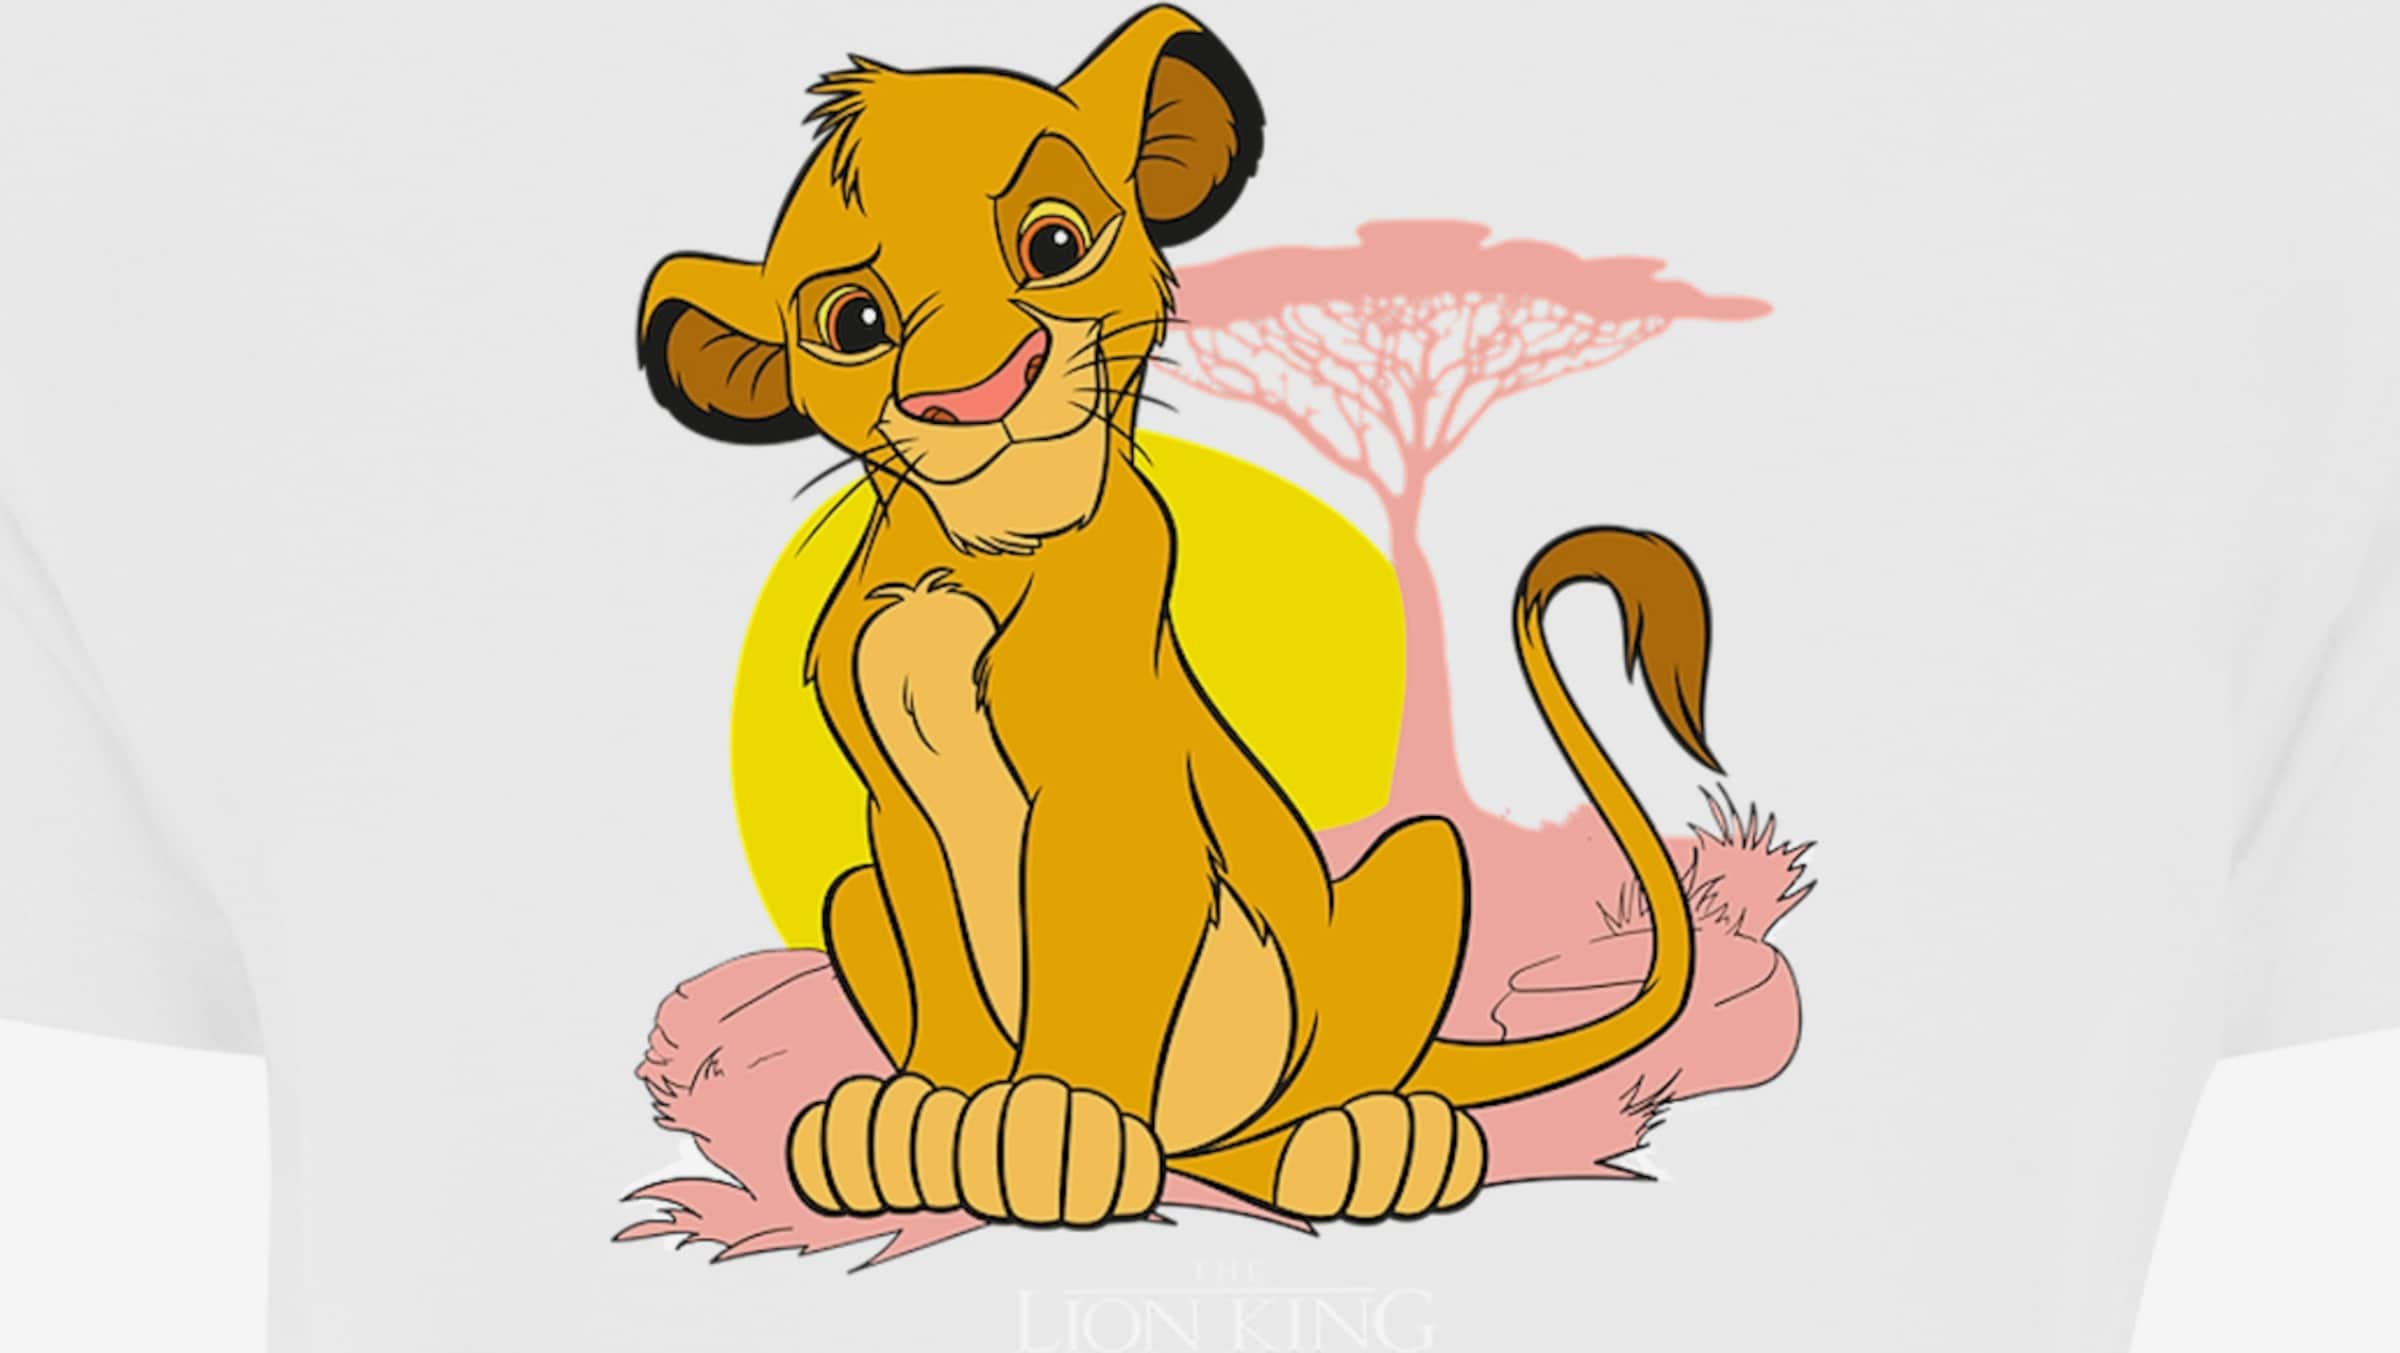 \'Disney YOU und F4NT4STIC Löwen White Simba der König Mufasa\' ABOUT | in Shirt